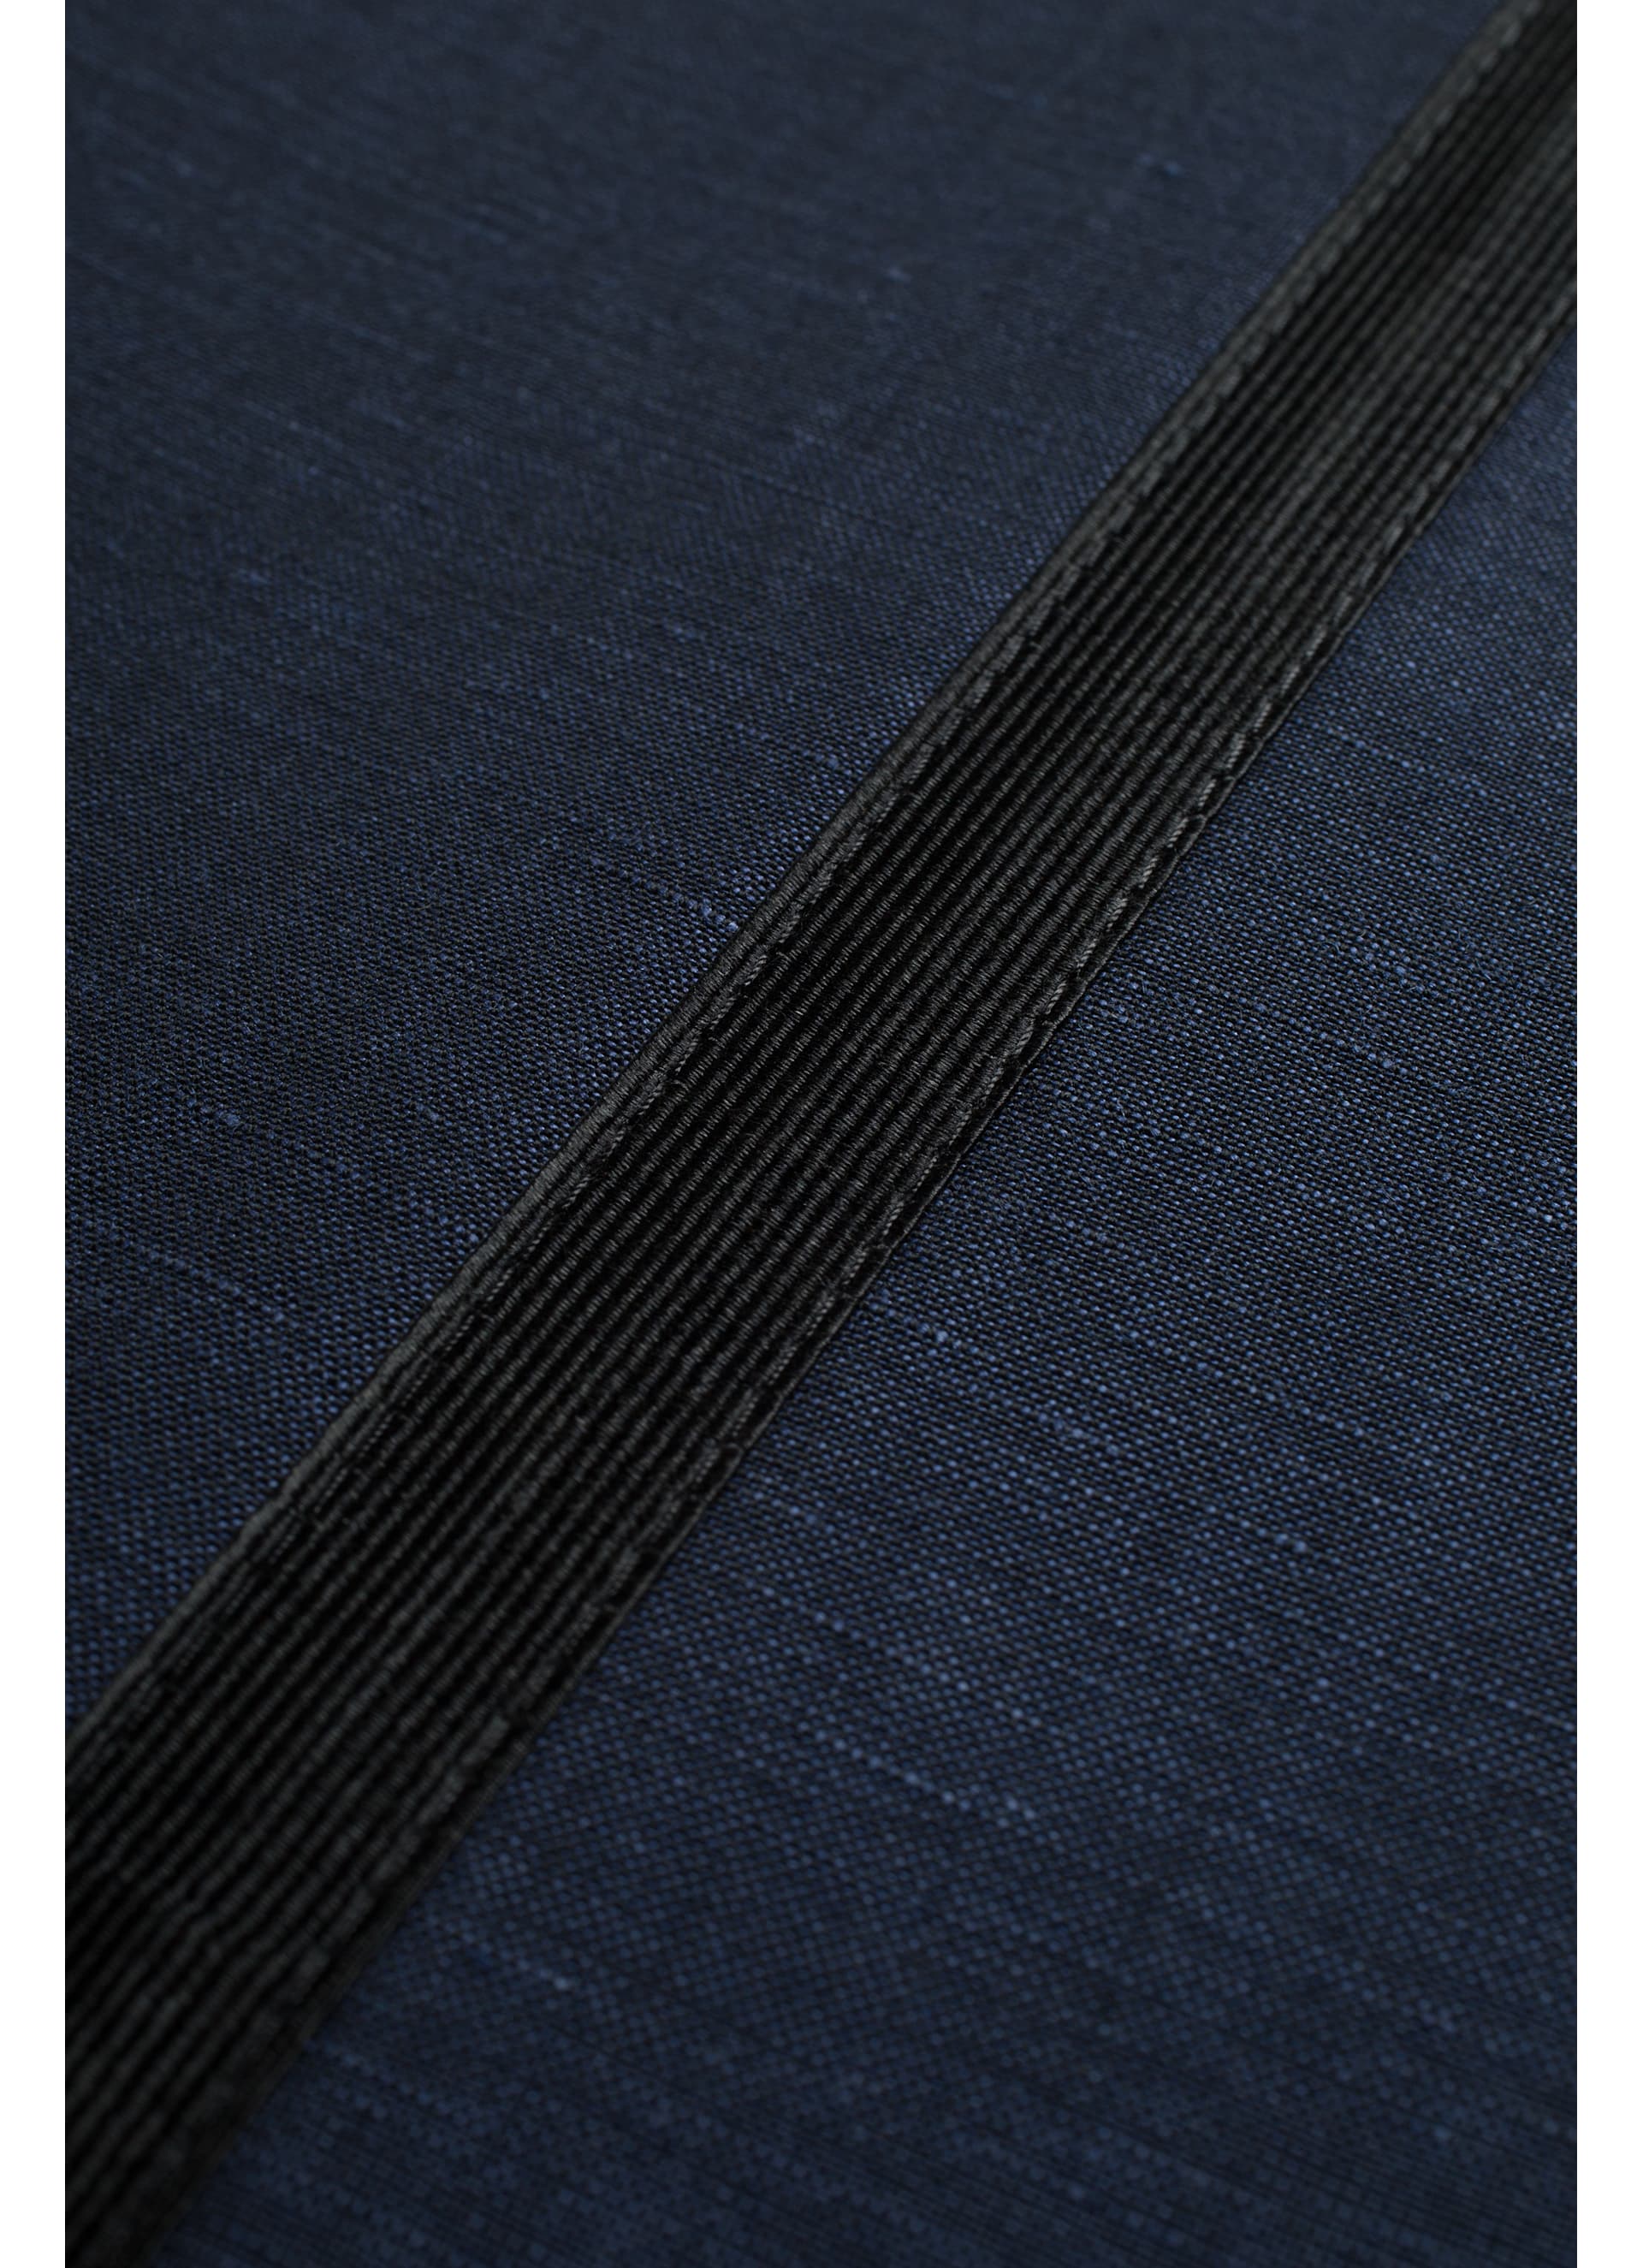 Suit Navy Plain Lazio P5190 | Suitsupply Online Store